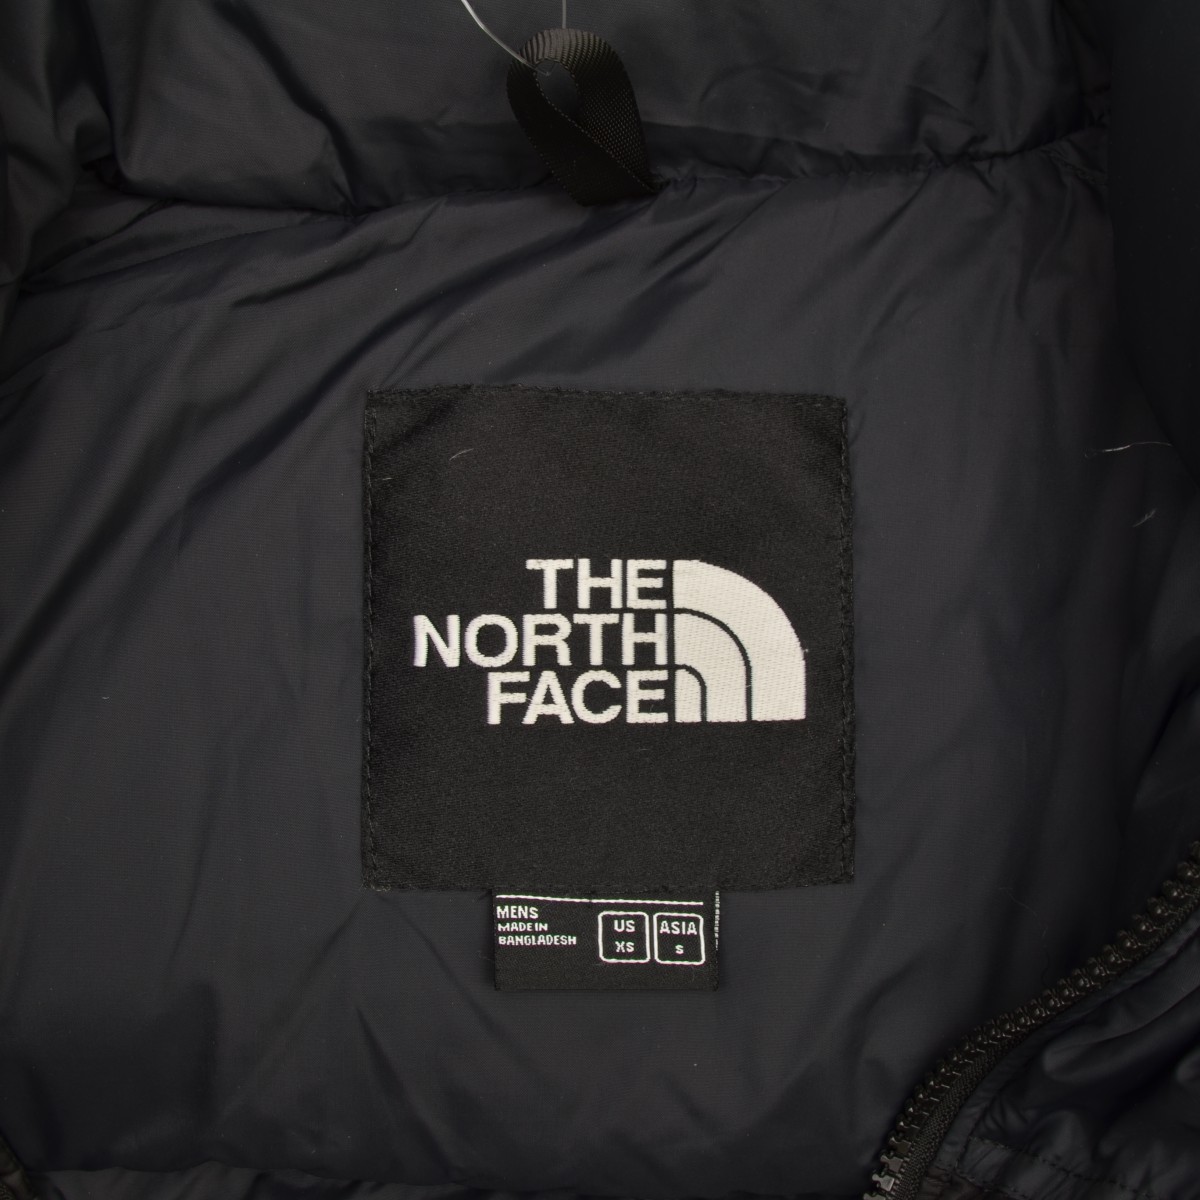 THE NORTH FACE / ノースフェイス NF0A496S 1996 RETRO NUPTSE JACKET ダウンジャケット  -ブランド古着の買取販売カンフル